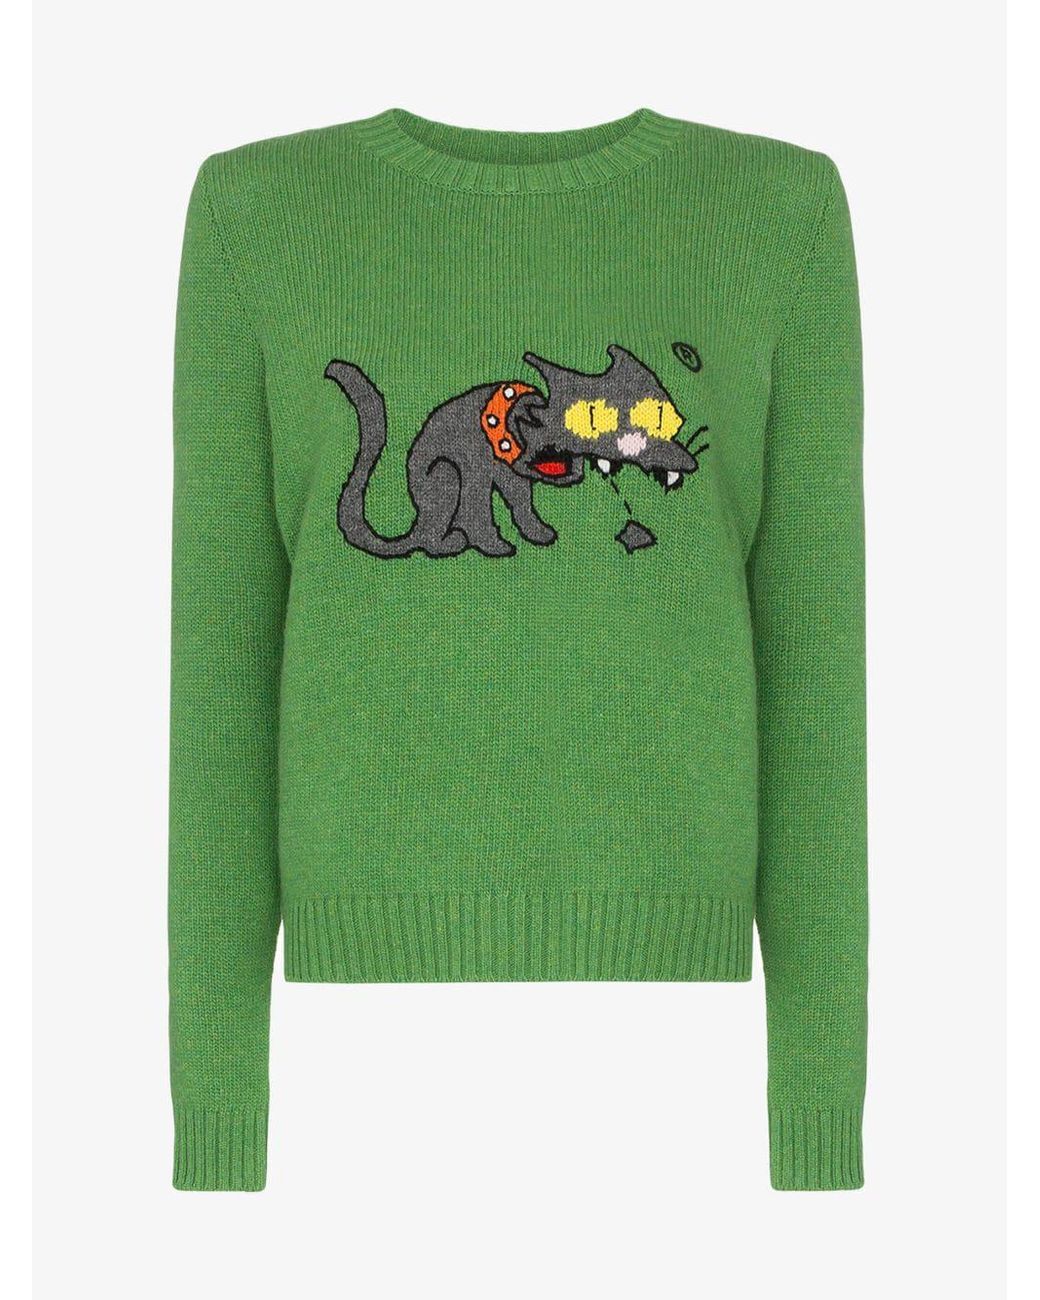 Miu Miu Simpsons Snowball Wool Sweater in Green | Lyst